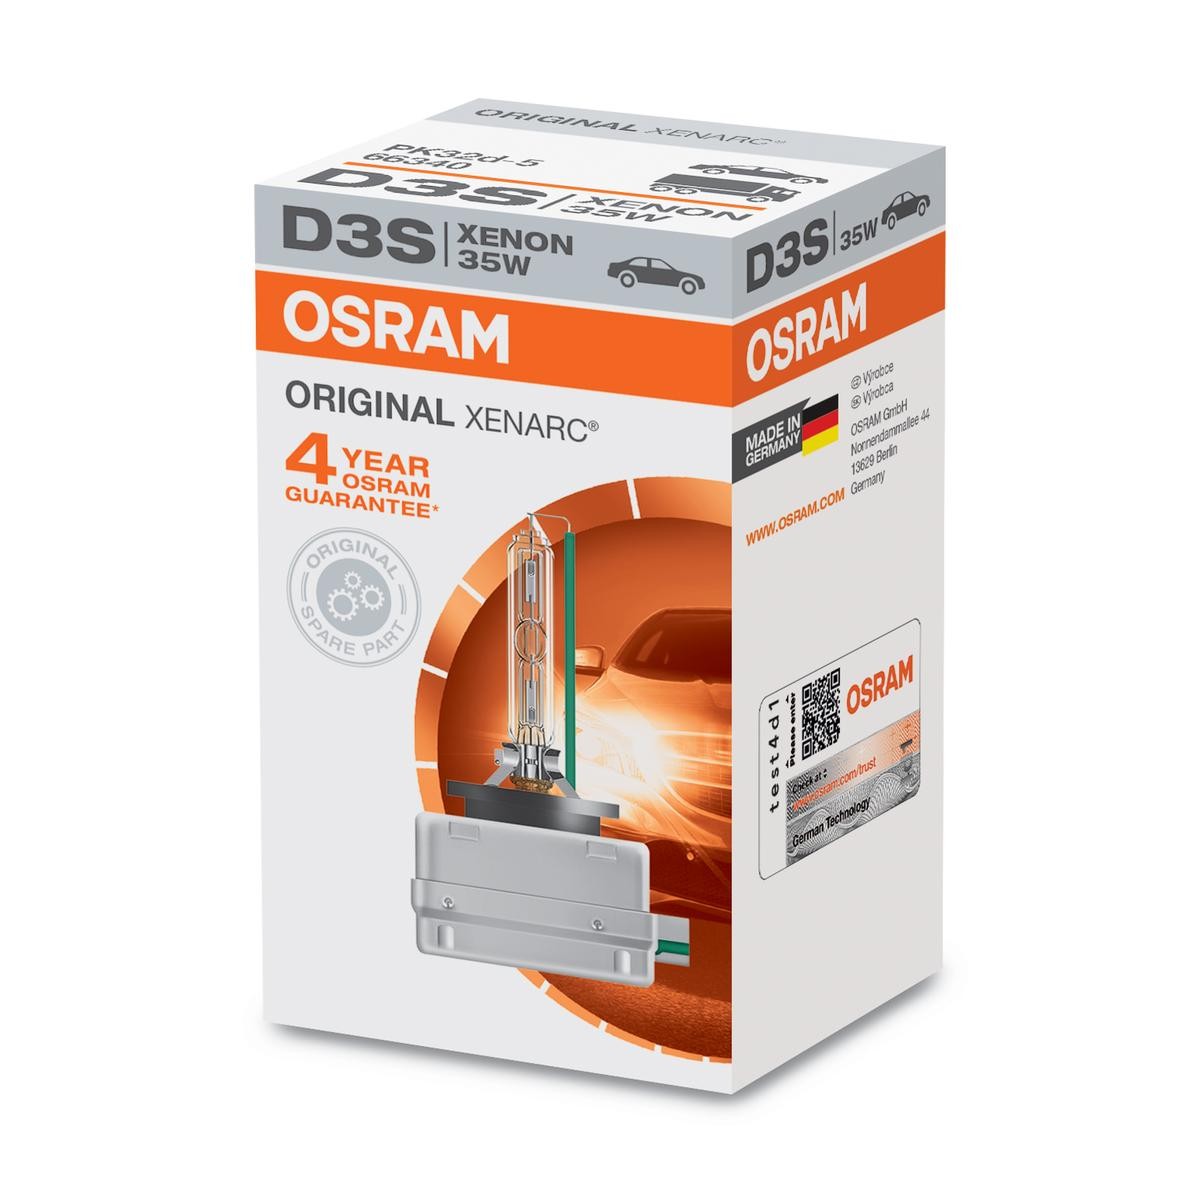 OSRAM XENARC ORIGINAL 66340 Zarnica glavnega zarometa D3S ( 42V 35W4100K Ksenon